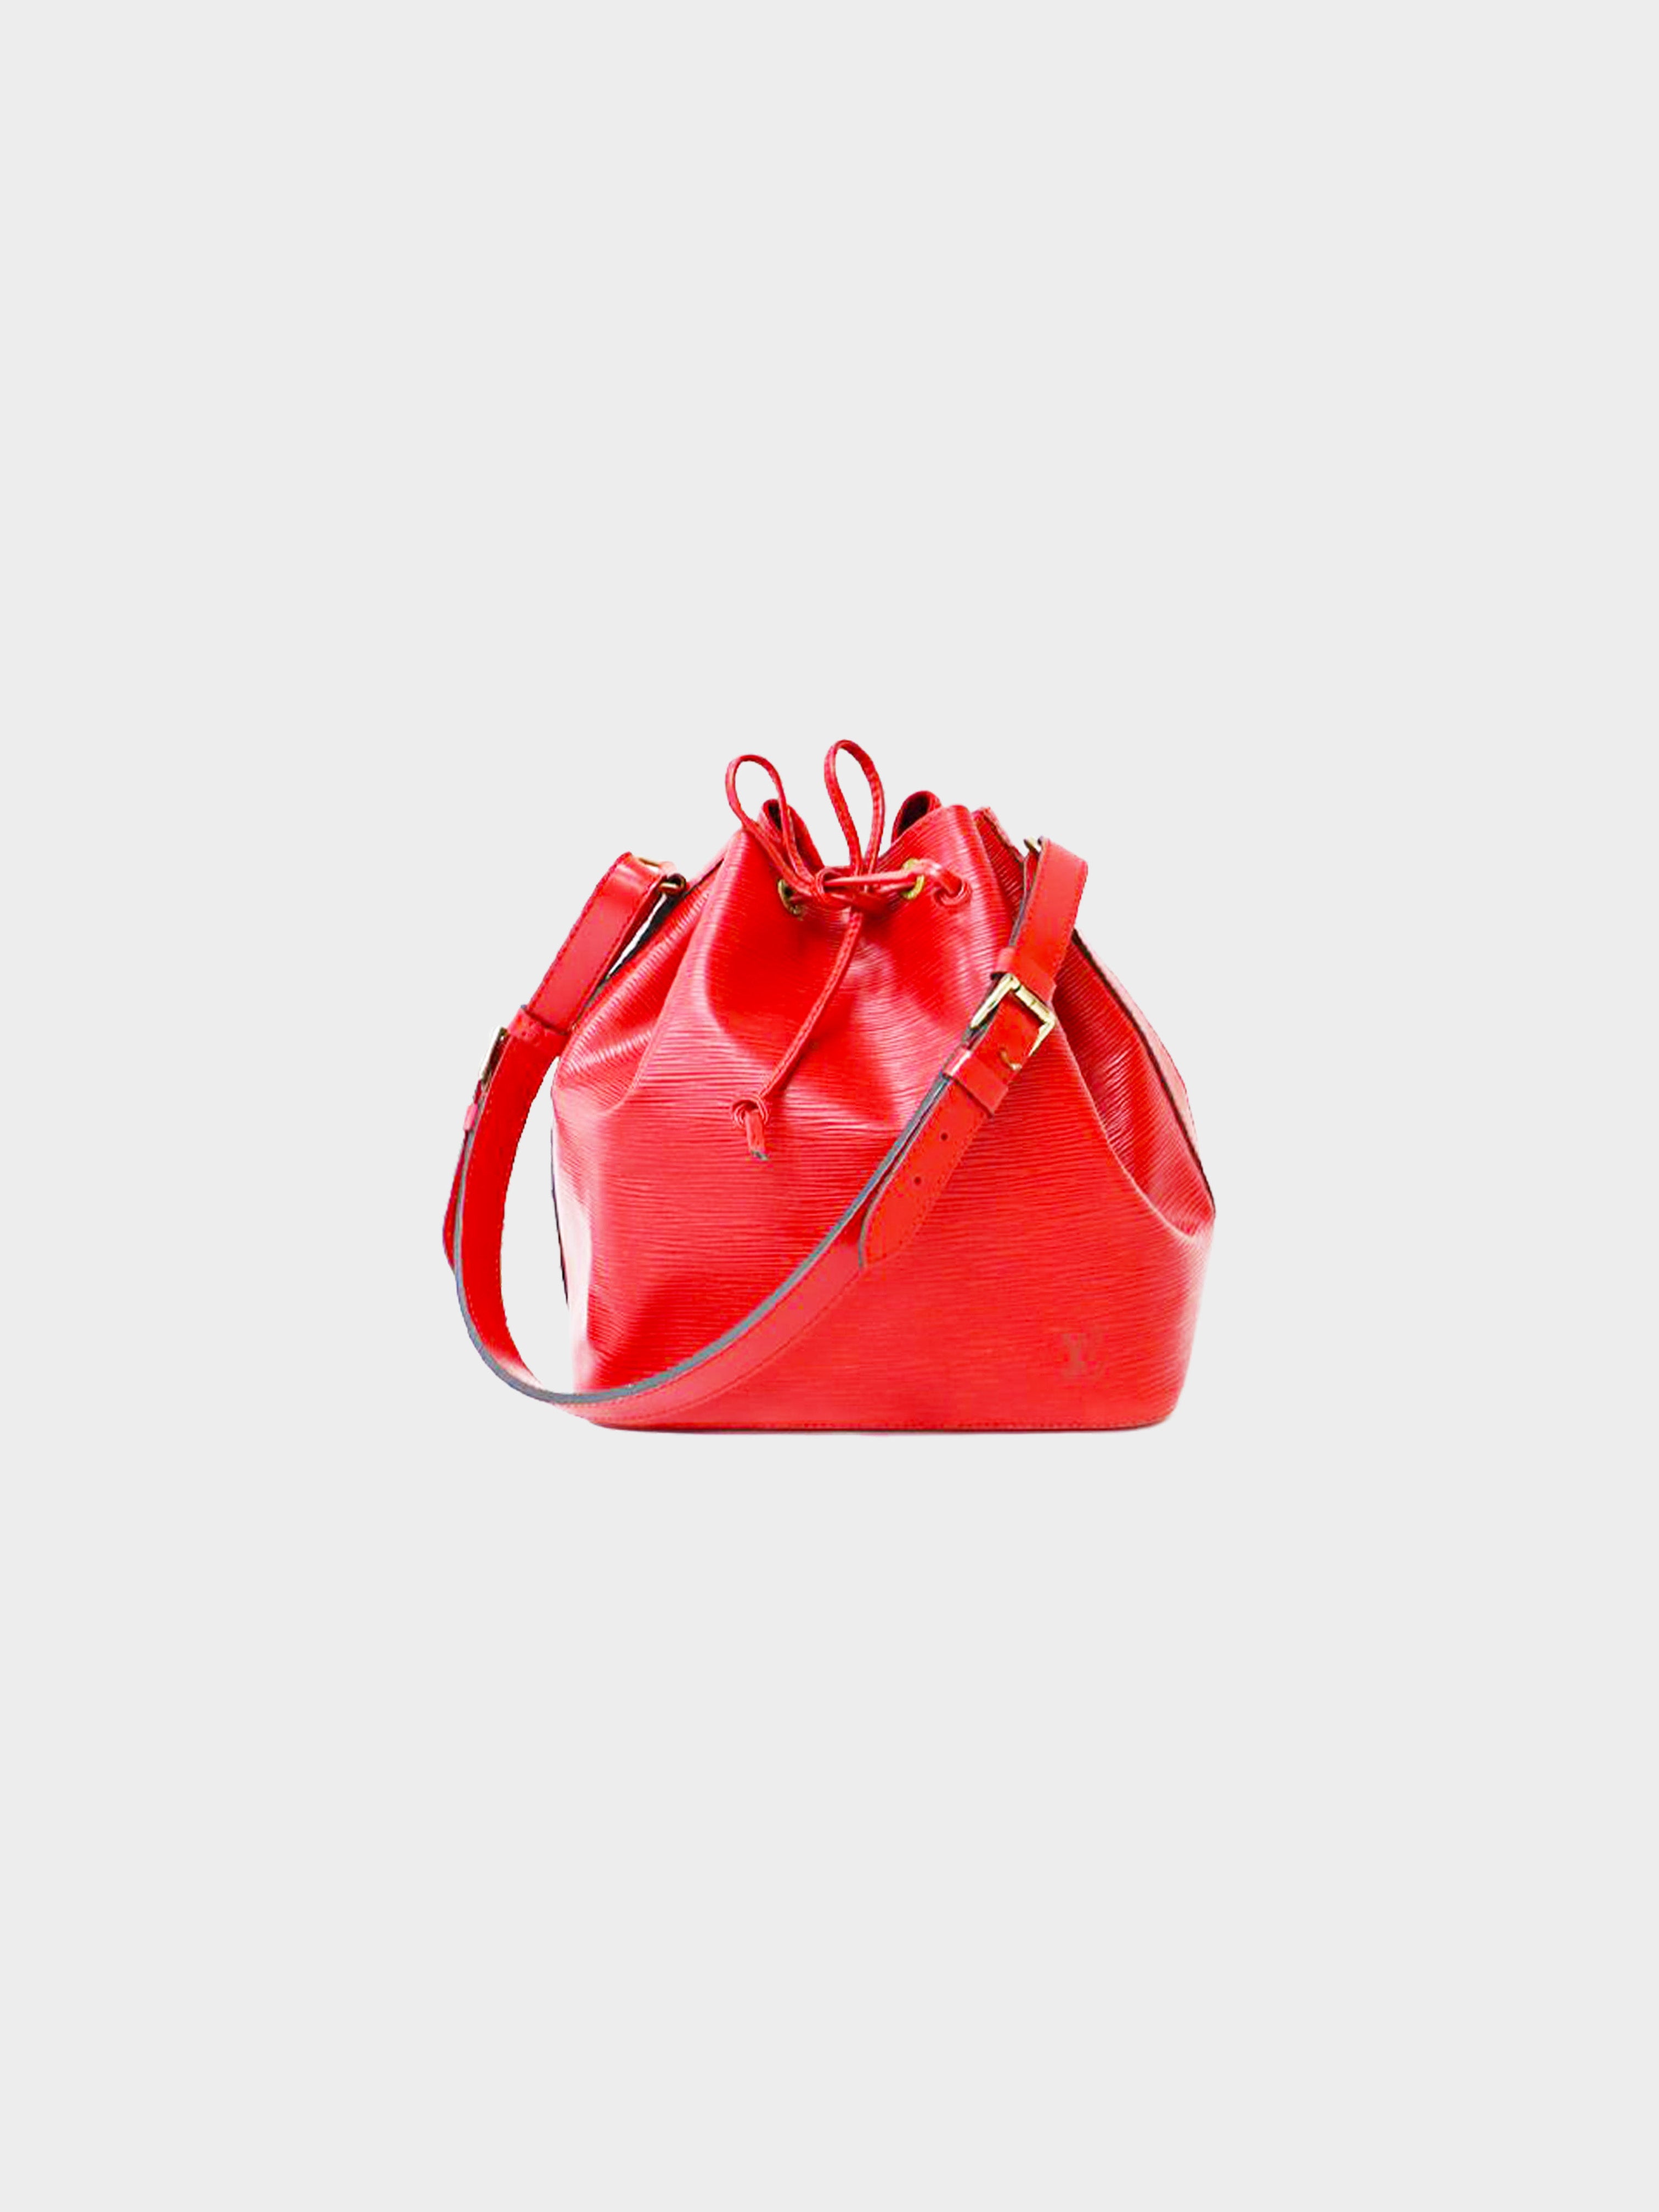 Louis Vuitton 1995 Camellia Red Epi Noe Bag · INTO